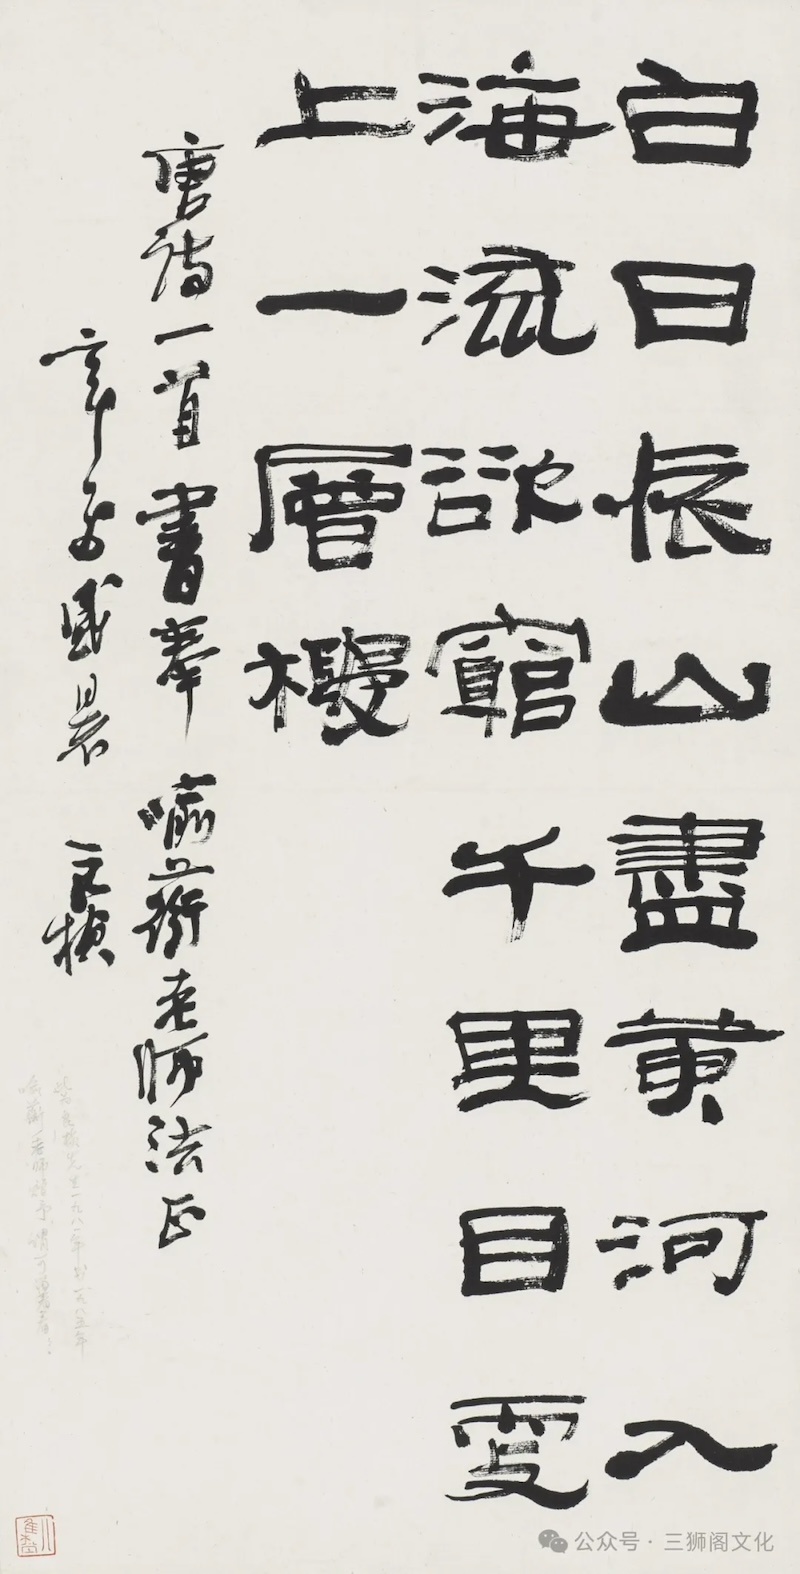 潘良桢，《隶书唐诗一首》 立轴，纸本 67.5cm×34.0cm